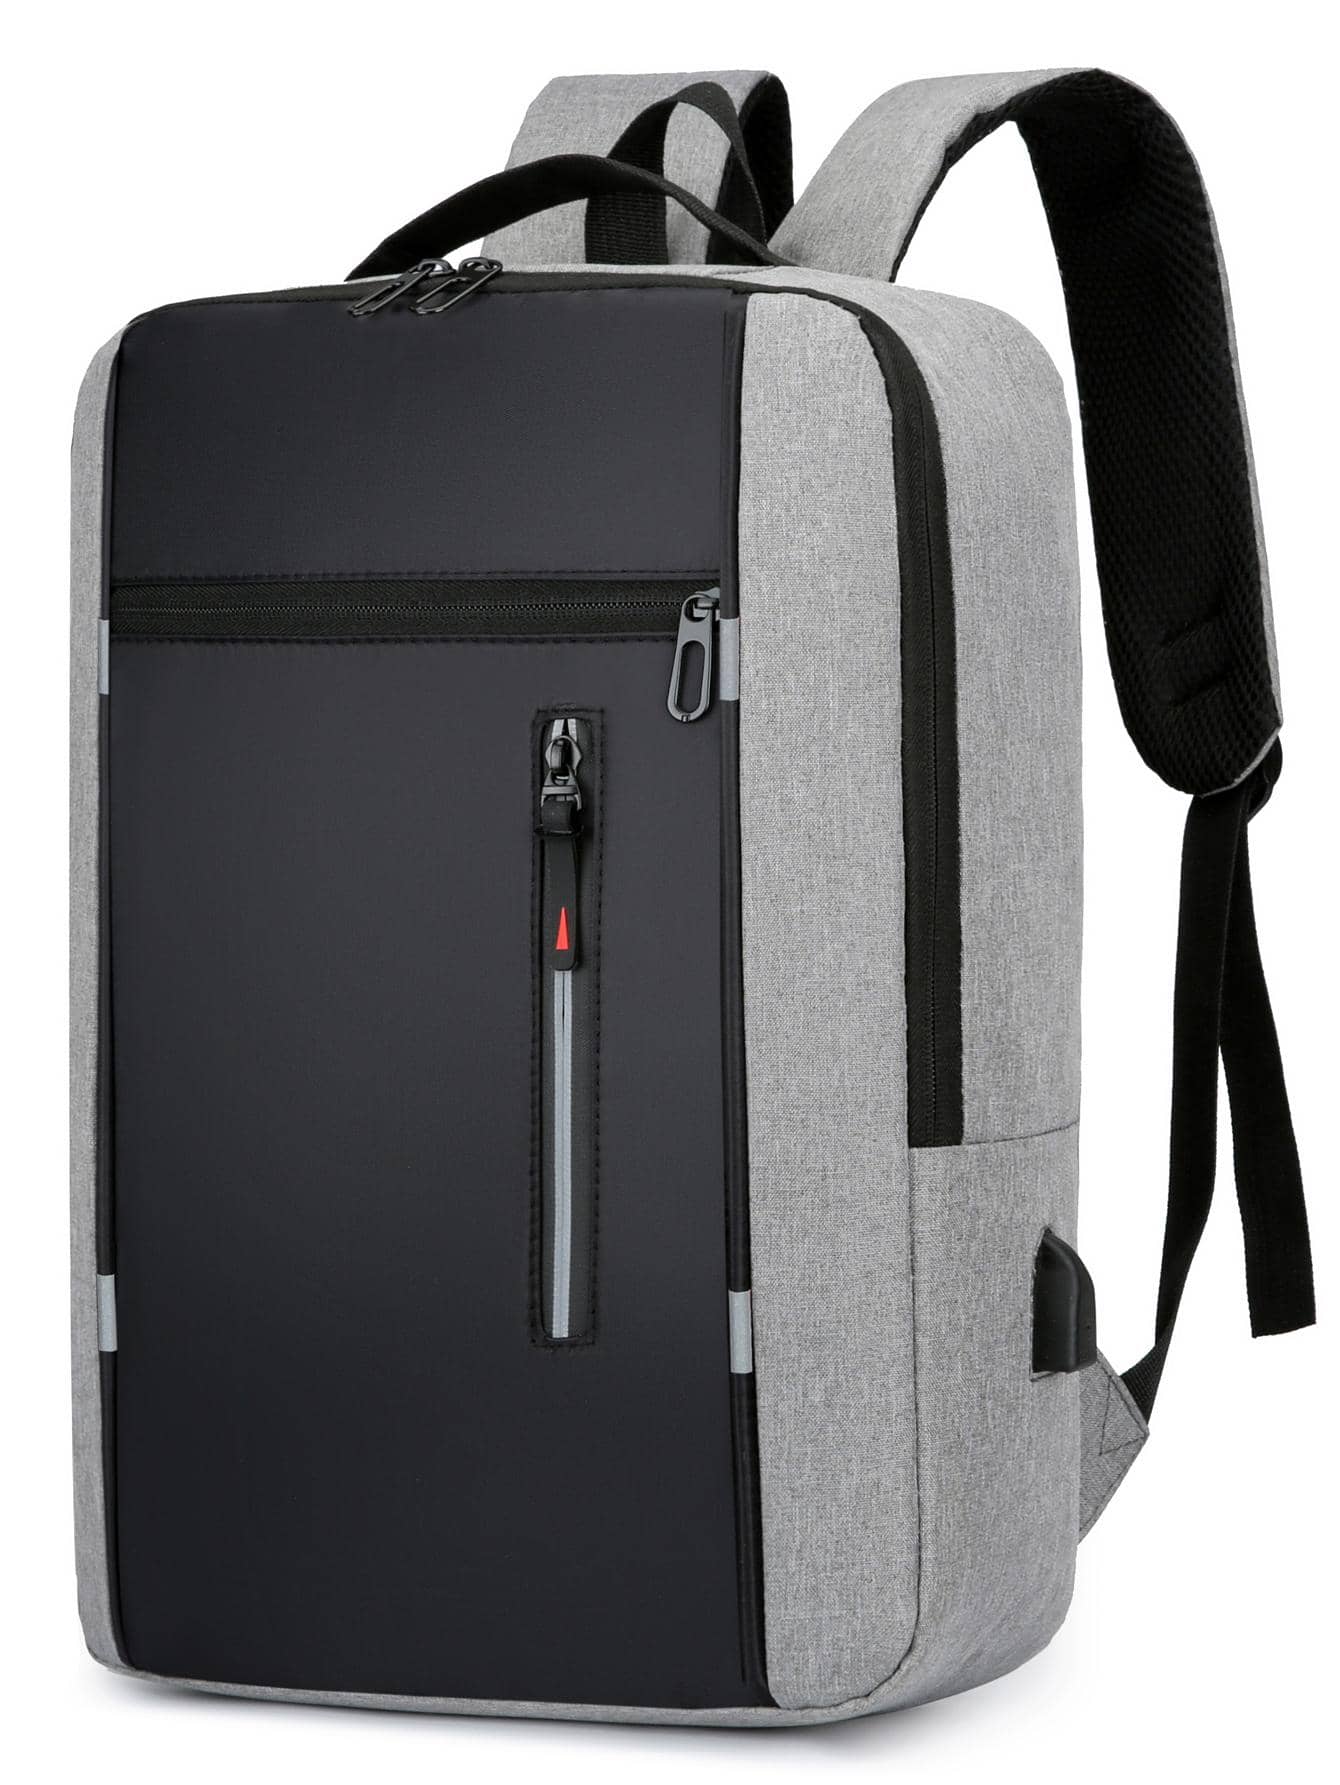 Рюкзак ноутбука Колорблок 15, серый рюкзак для девочек подростков с usb портом для зарядки и защитой от кражи